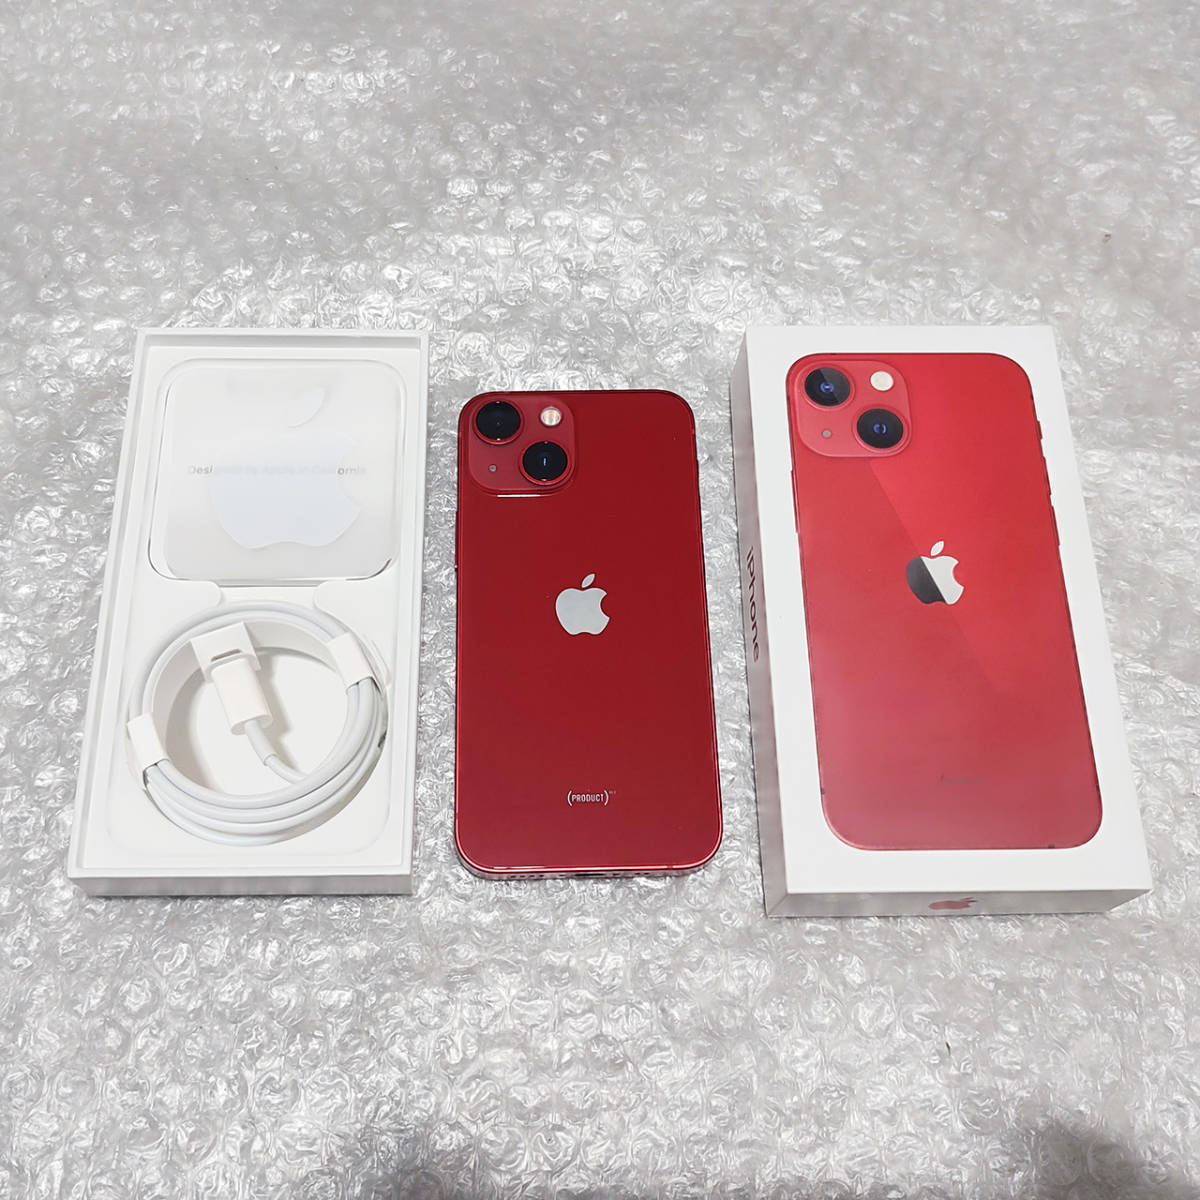 極美品★ iPhone 13 mini product RED 512gb SIMフリー